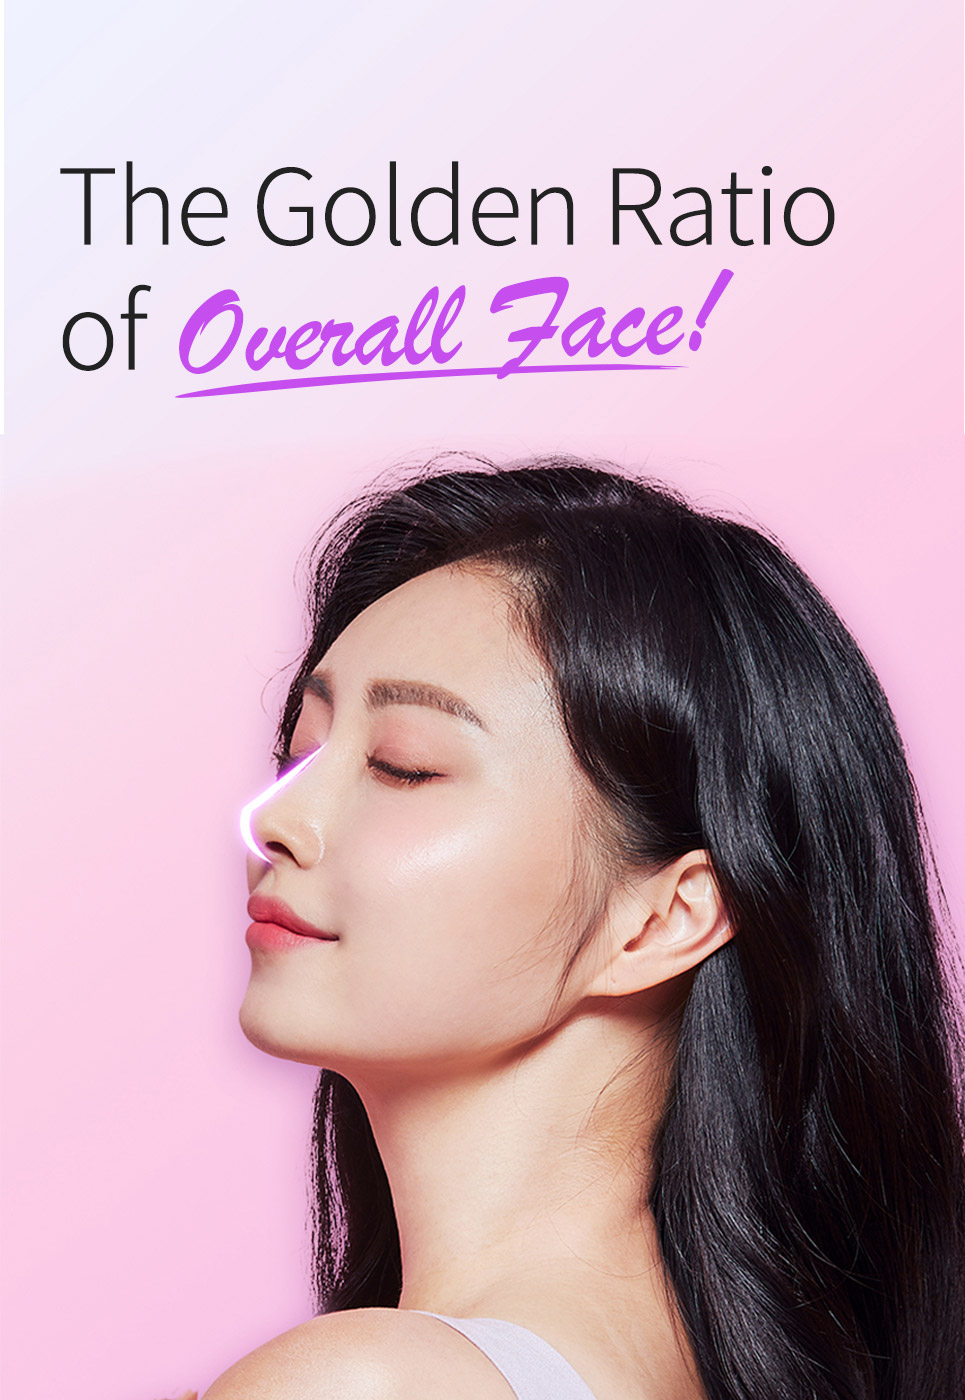 The golden ratio og Overall Face!